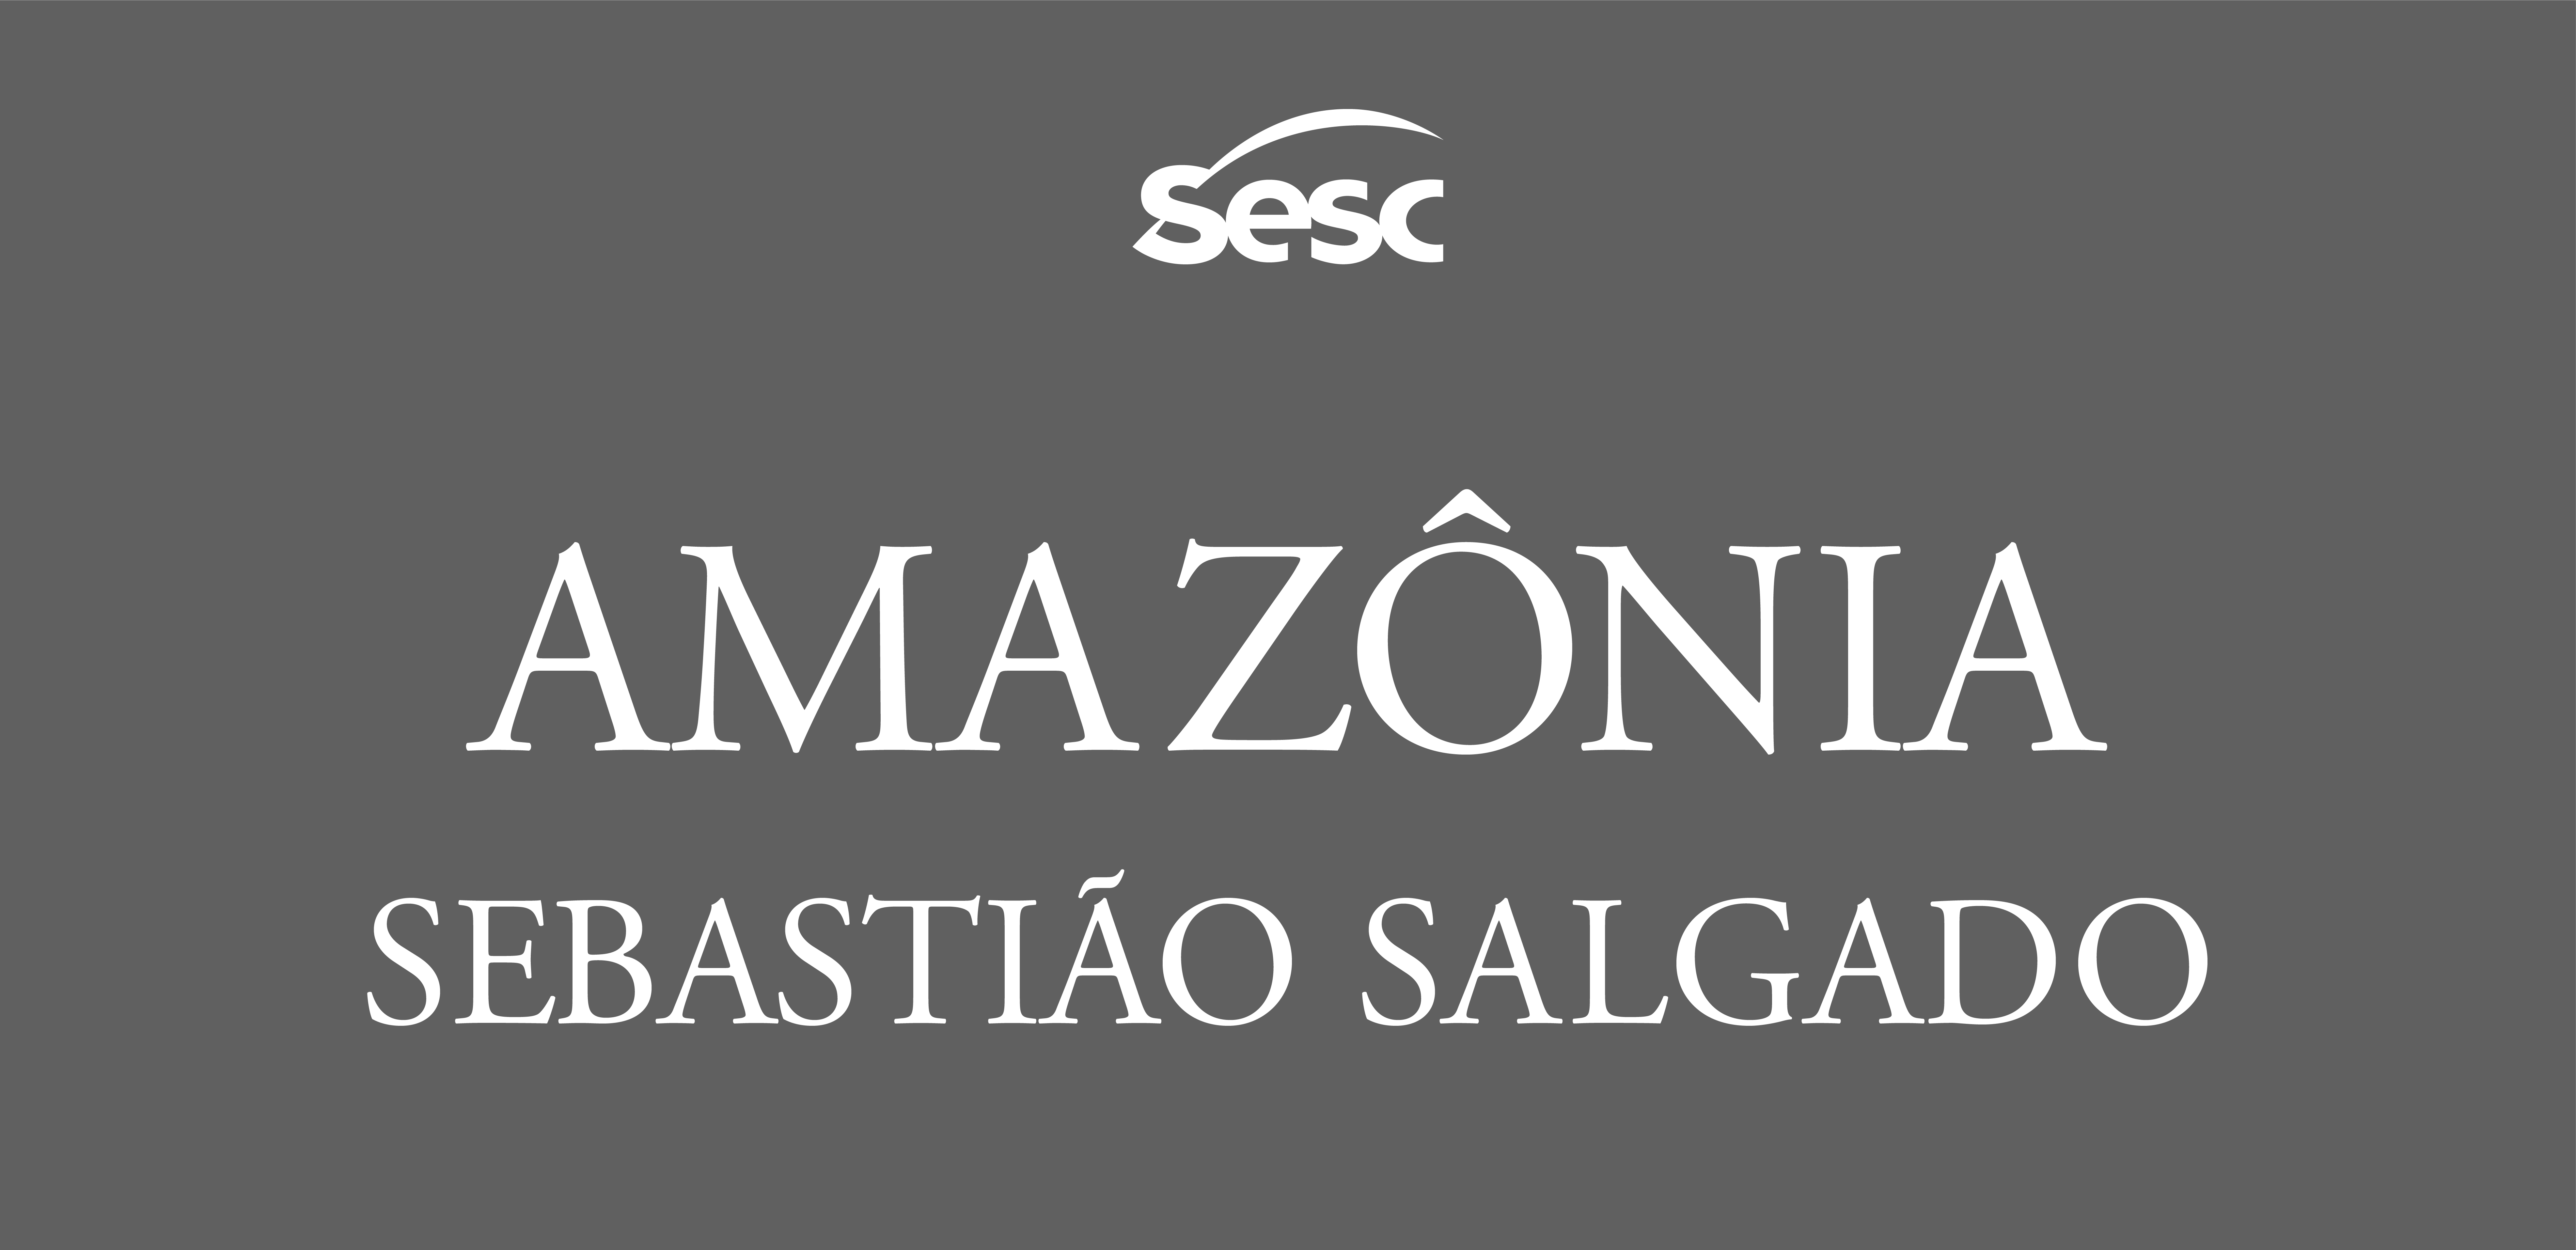 Logo da Exposição Amazônia - Sebastião Salgado composta por fundo retangular cor de cinza com o título escrito com letras brancas maiúsculas em duas linhas. Acima, logo do Sesc.